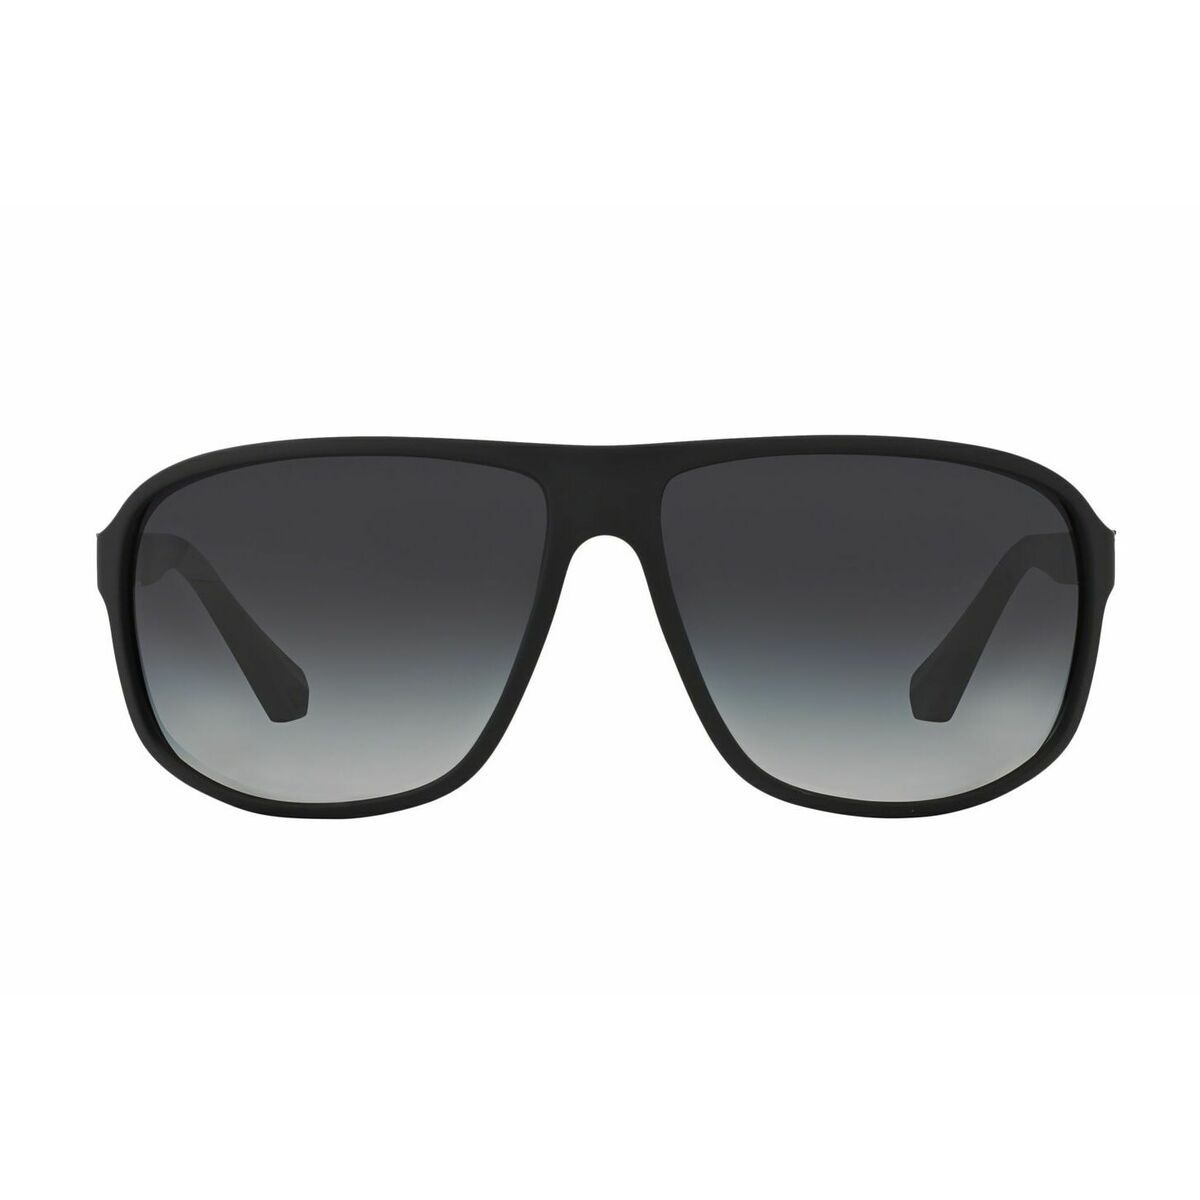 EA4029 Square Sunglasses 5063 8G - size 64